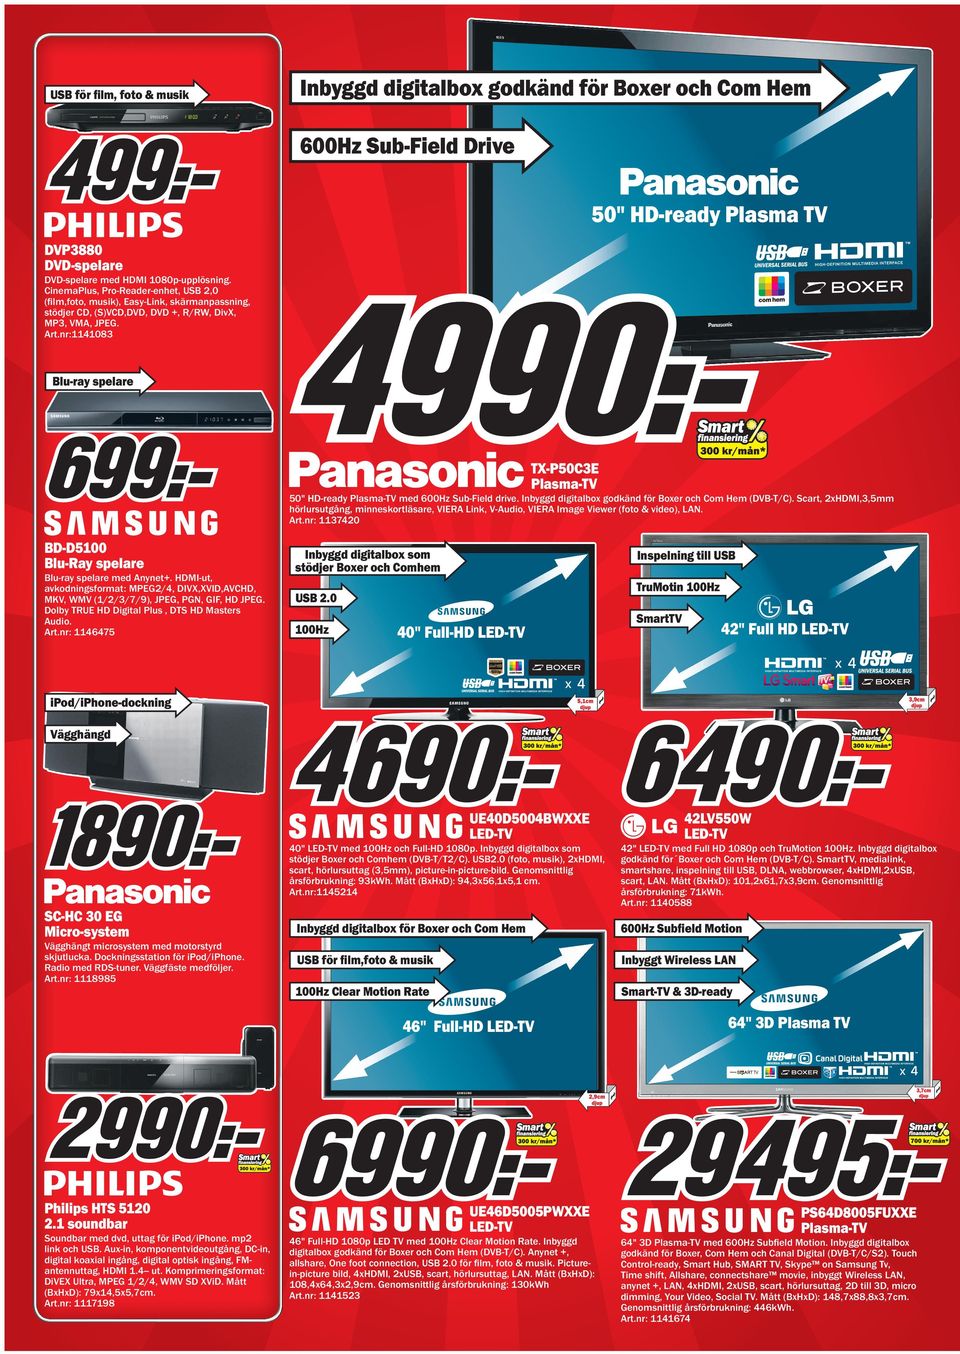 nr:1141083 Blu-ray spelare T-P50C3E Plasma-TV 50" HD-ready Plasma-TV med 600Hz Sub-Field drive. Inbyggd digitalbox godkänd för Boxer och Com Hem (DVB-T/C).